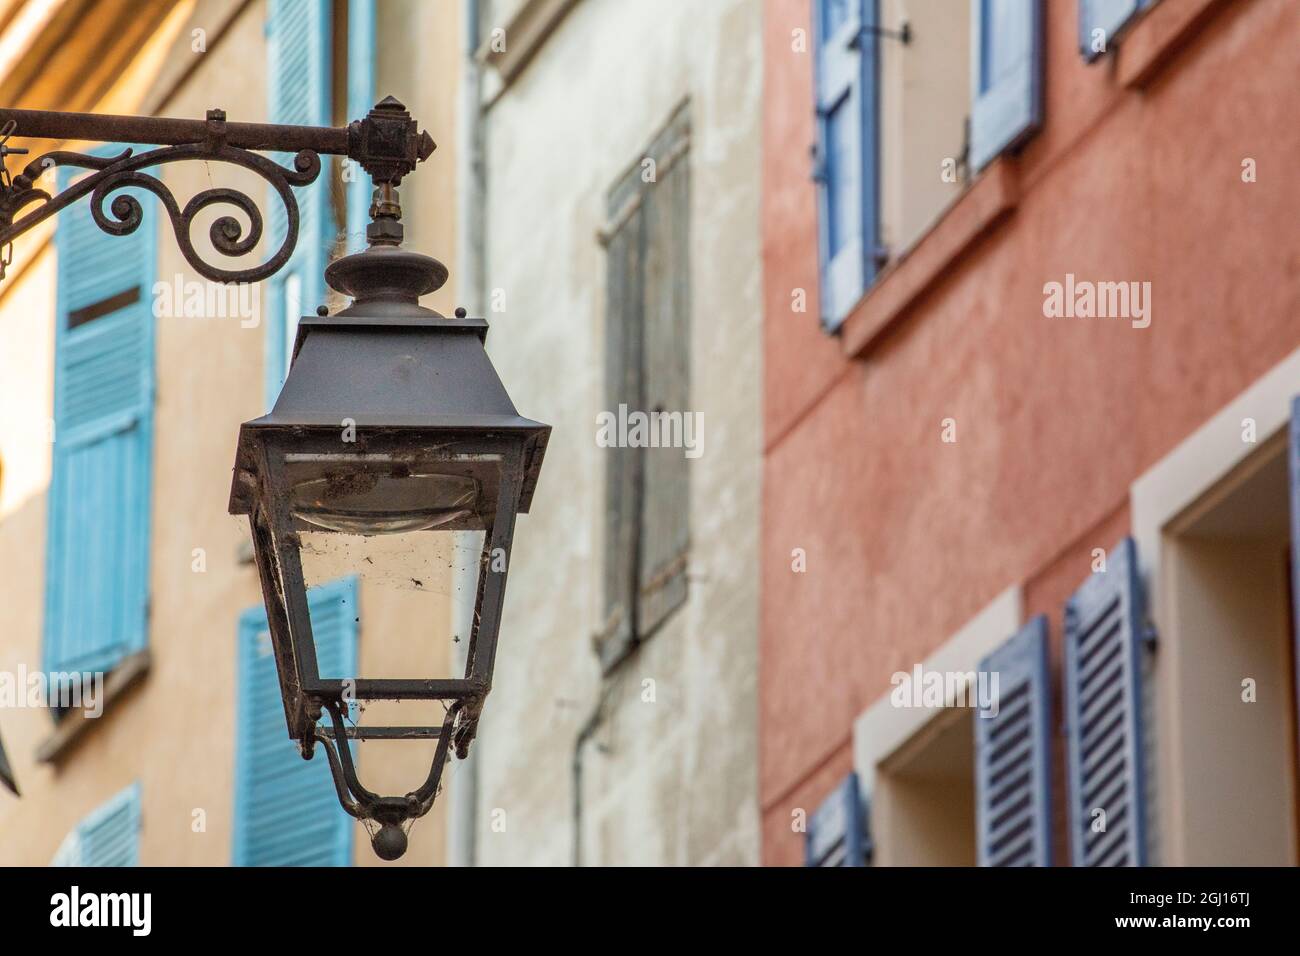 Lampadaire et fenêtres de la maison Manosque en Provence région du Sud de la France. Banque D'Images